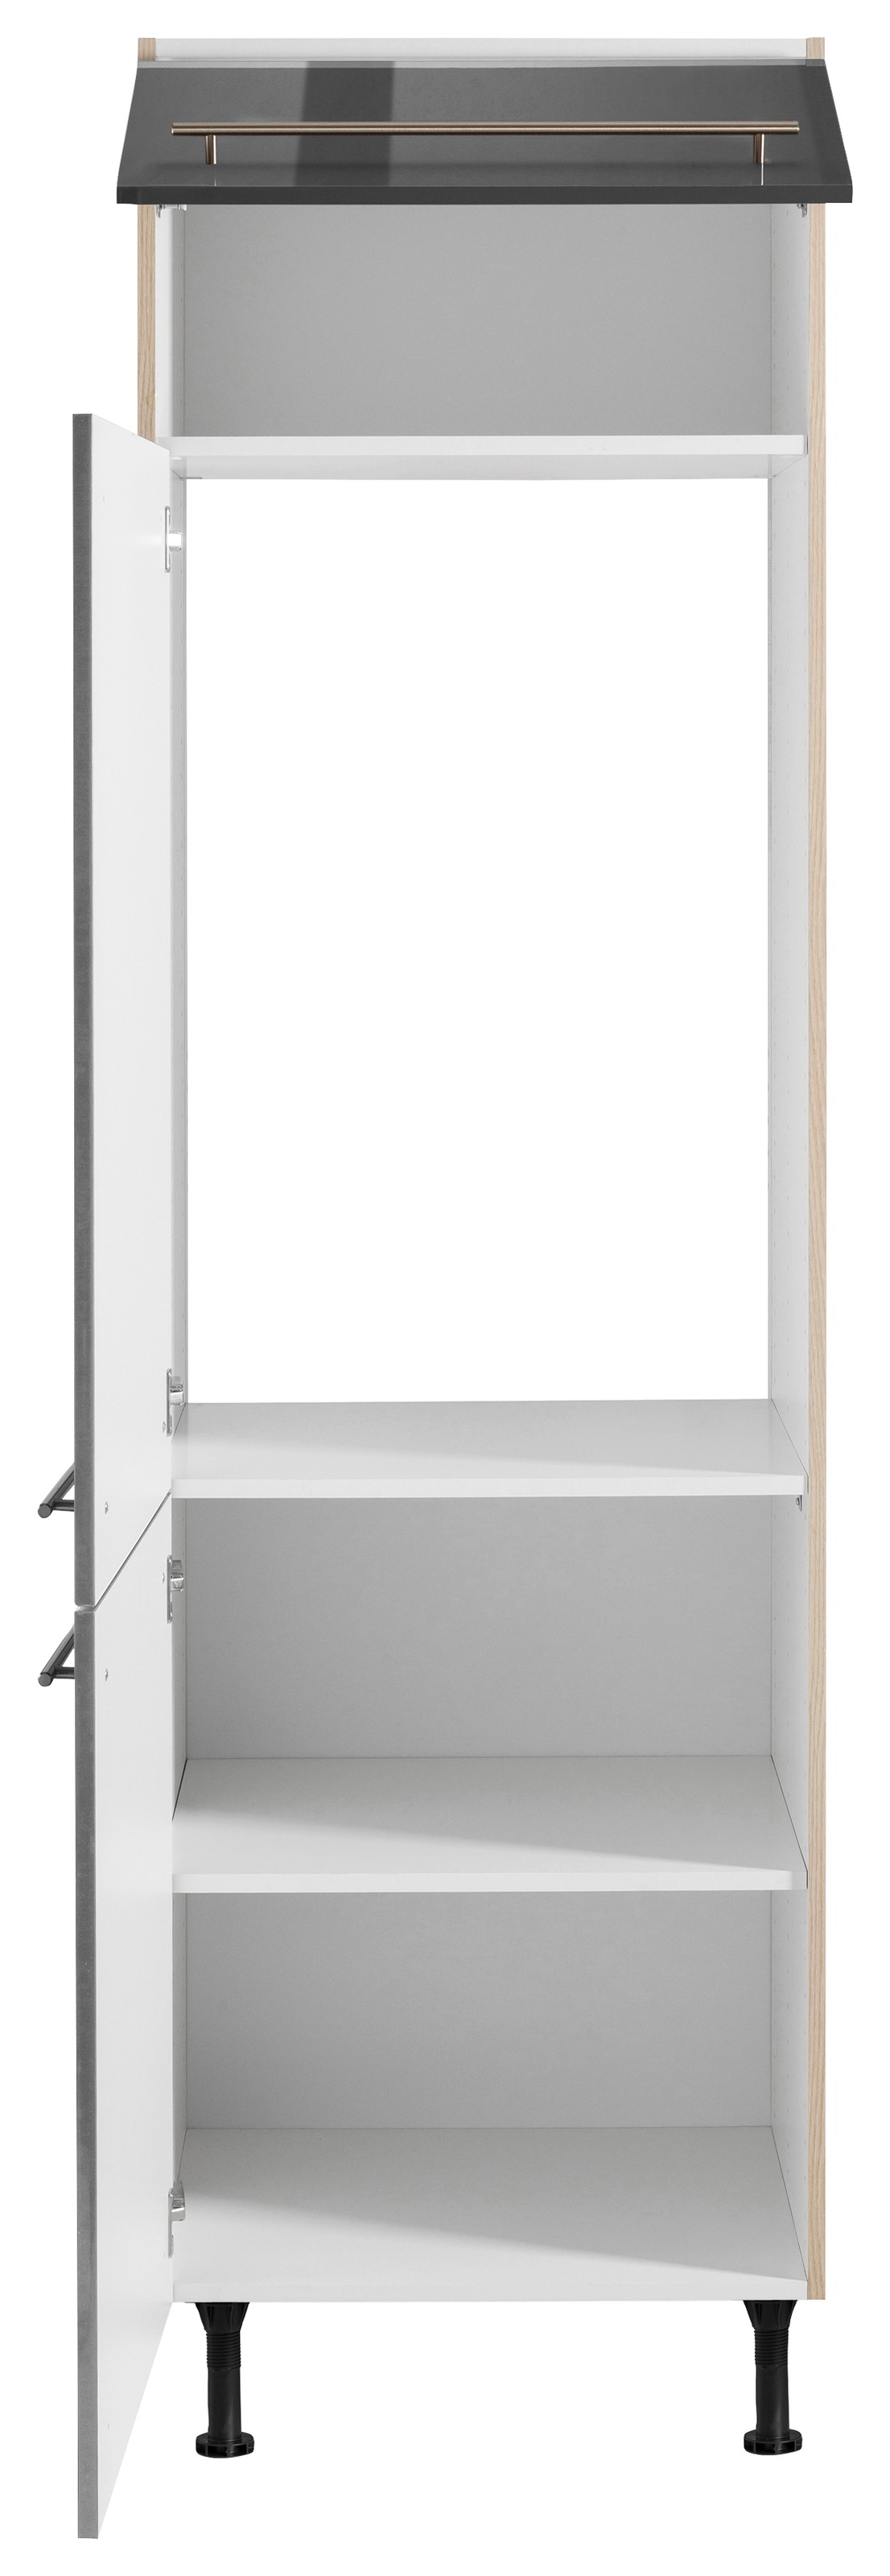 OPTIFIT Kühlumbauschrank »Bern«, 60 cm breit, 212 cm hoch, mit höhenverstellbaren Stellfüßen